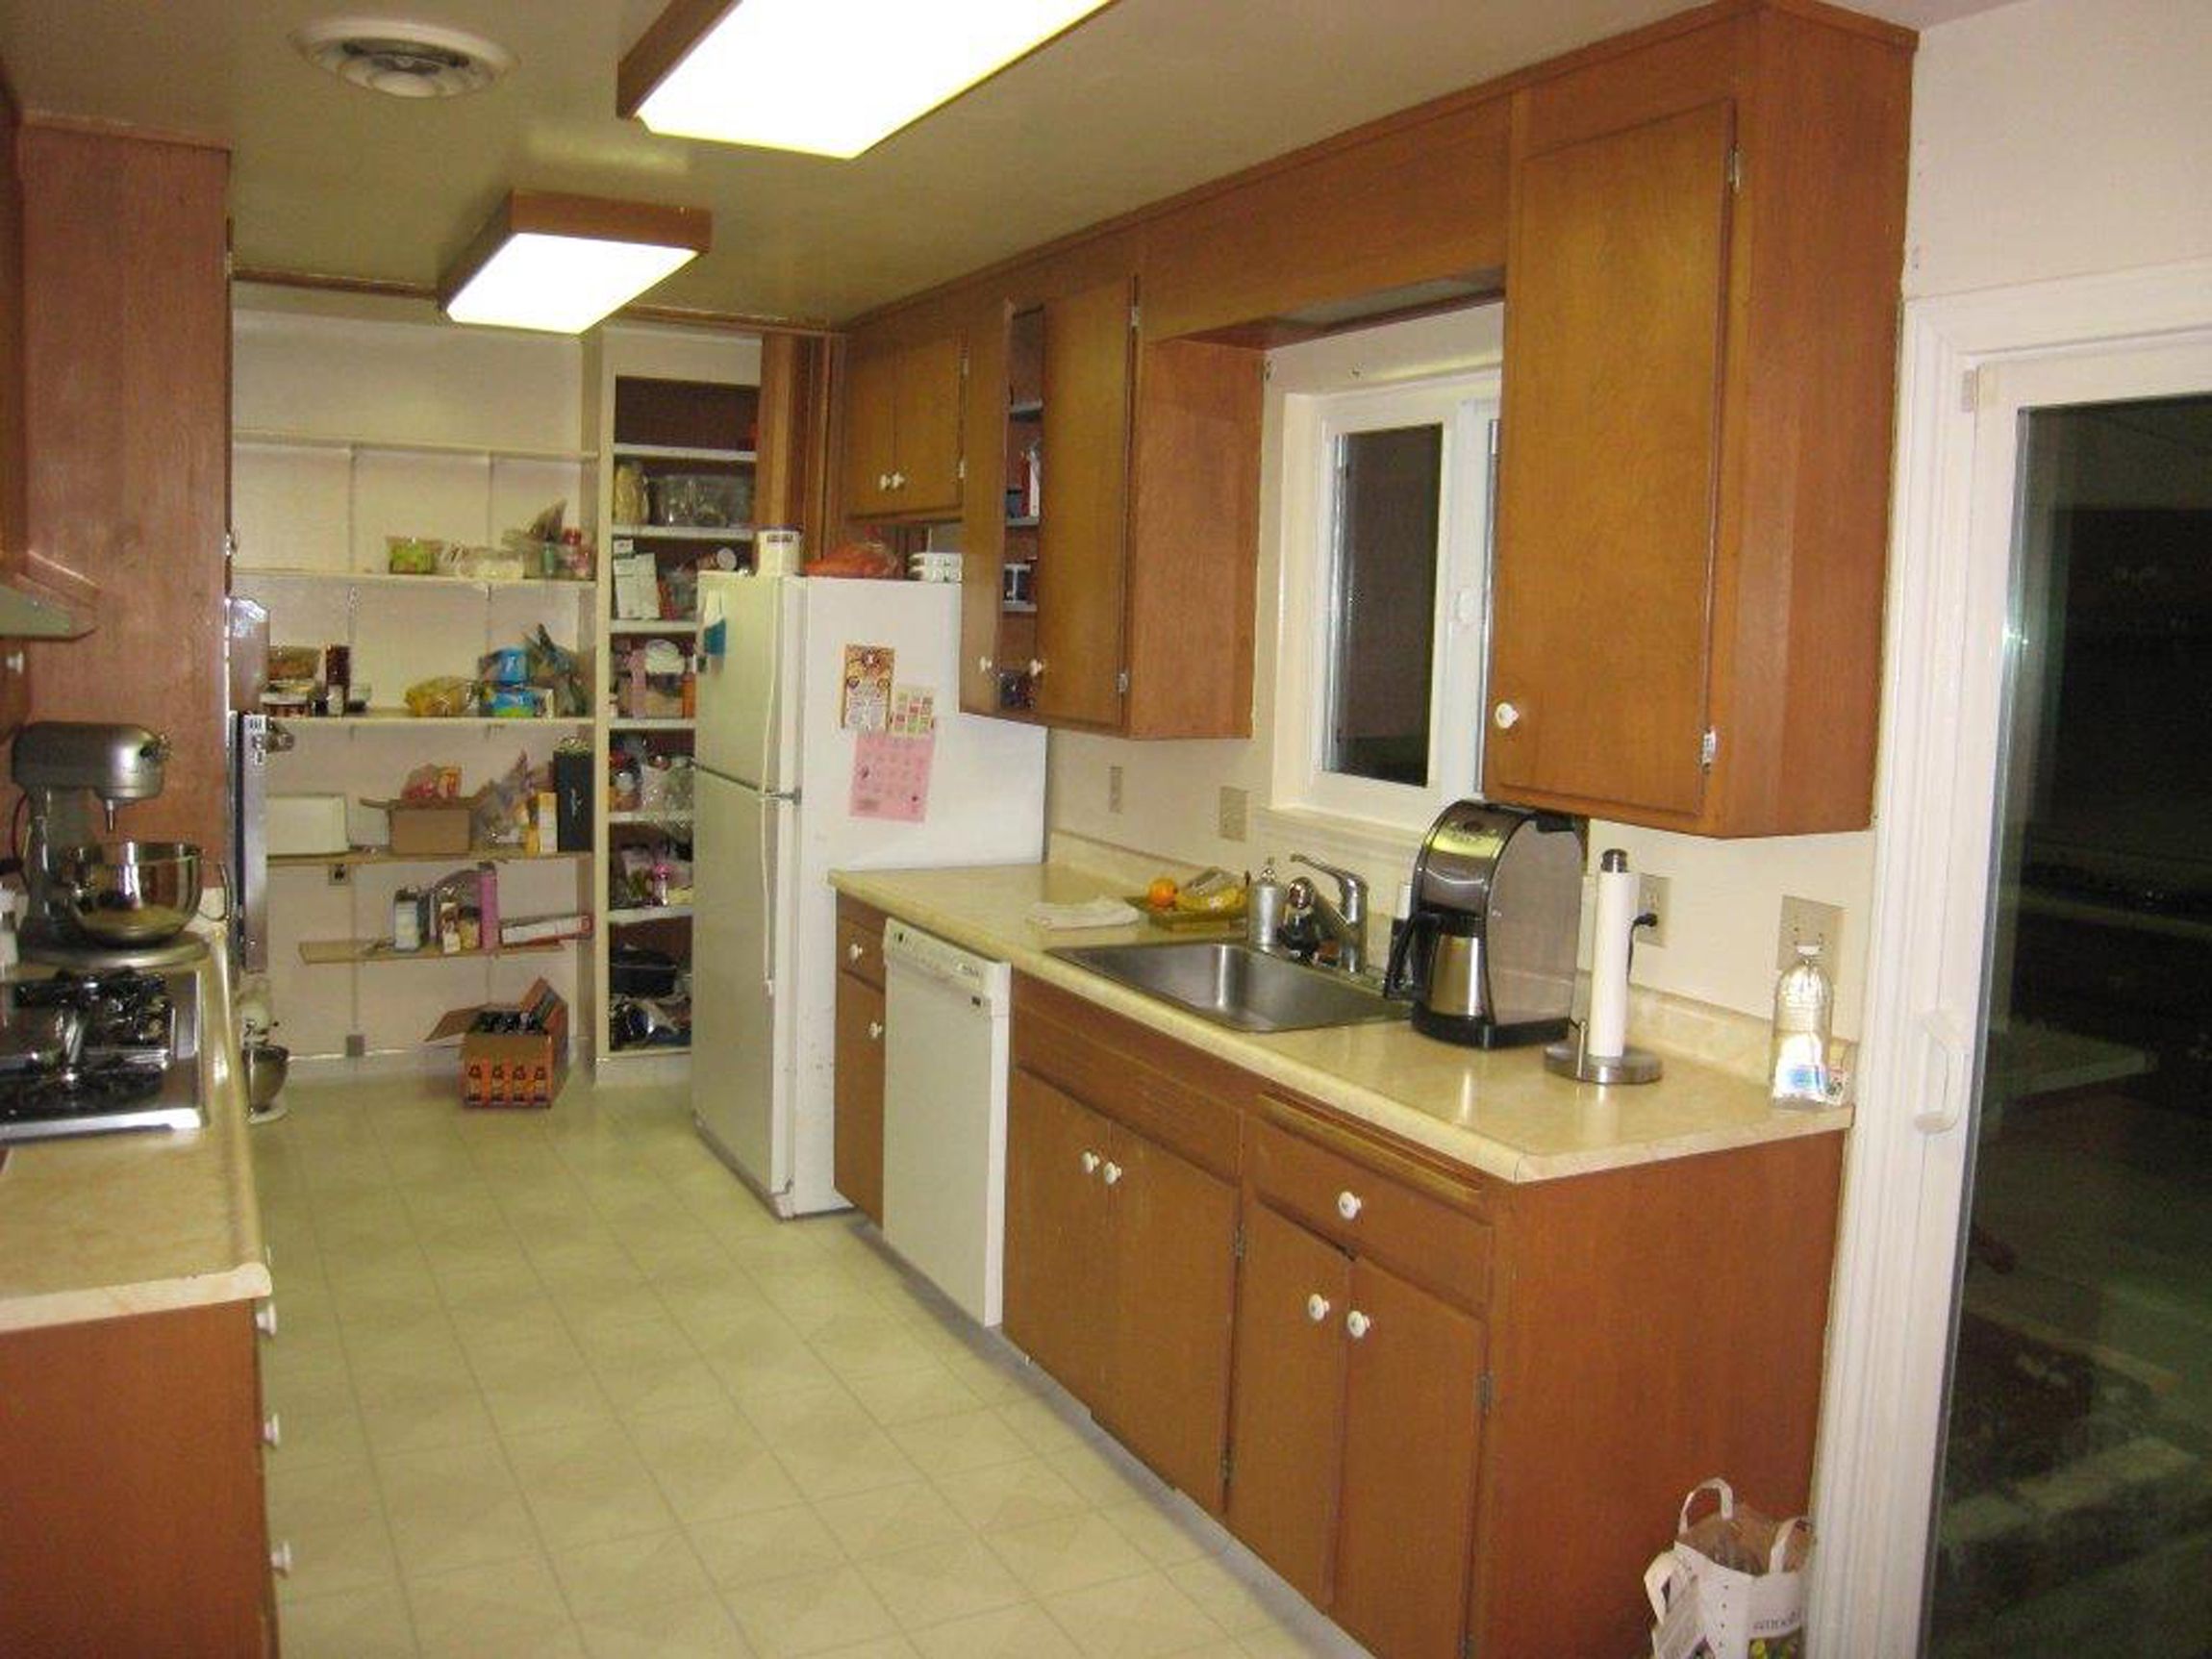 Minimalist Corridor Walnut Creek Galley Kitchen Layout Design With Organize Storage Smart Ideas For Galley Kitchen Layout Designs (Photo 20 of 25)